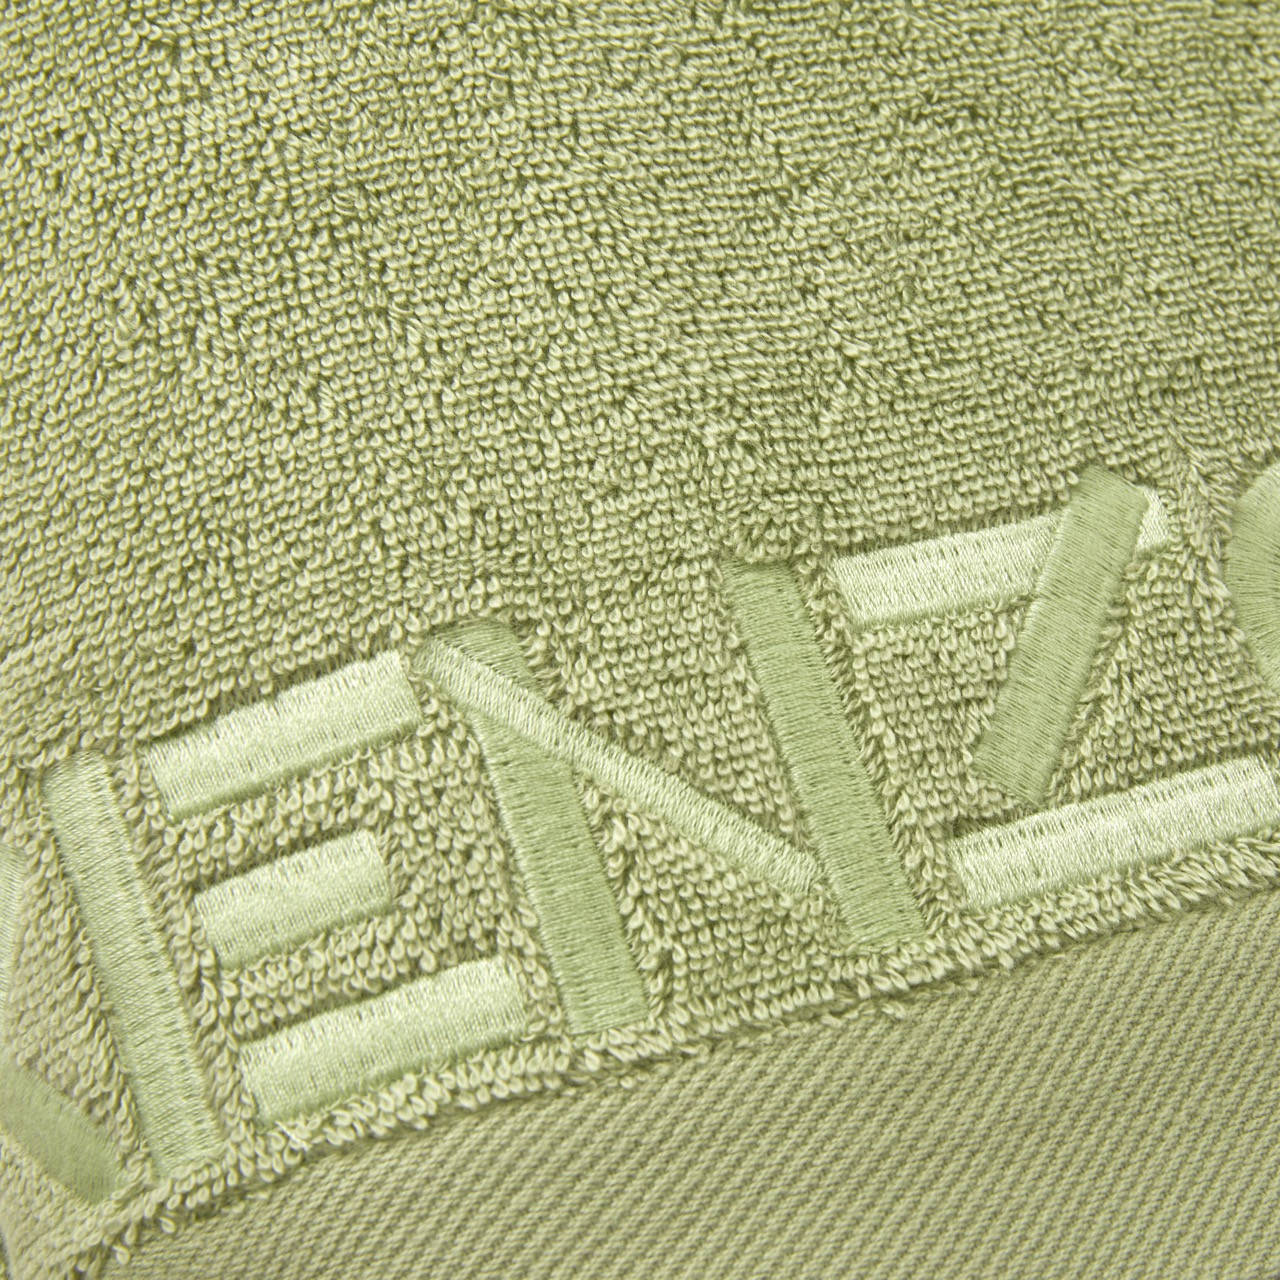 267669 - 3 - Towel Iconic Pimpermint - Kenzo Large.jpeg